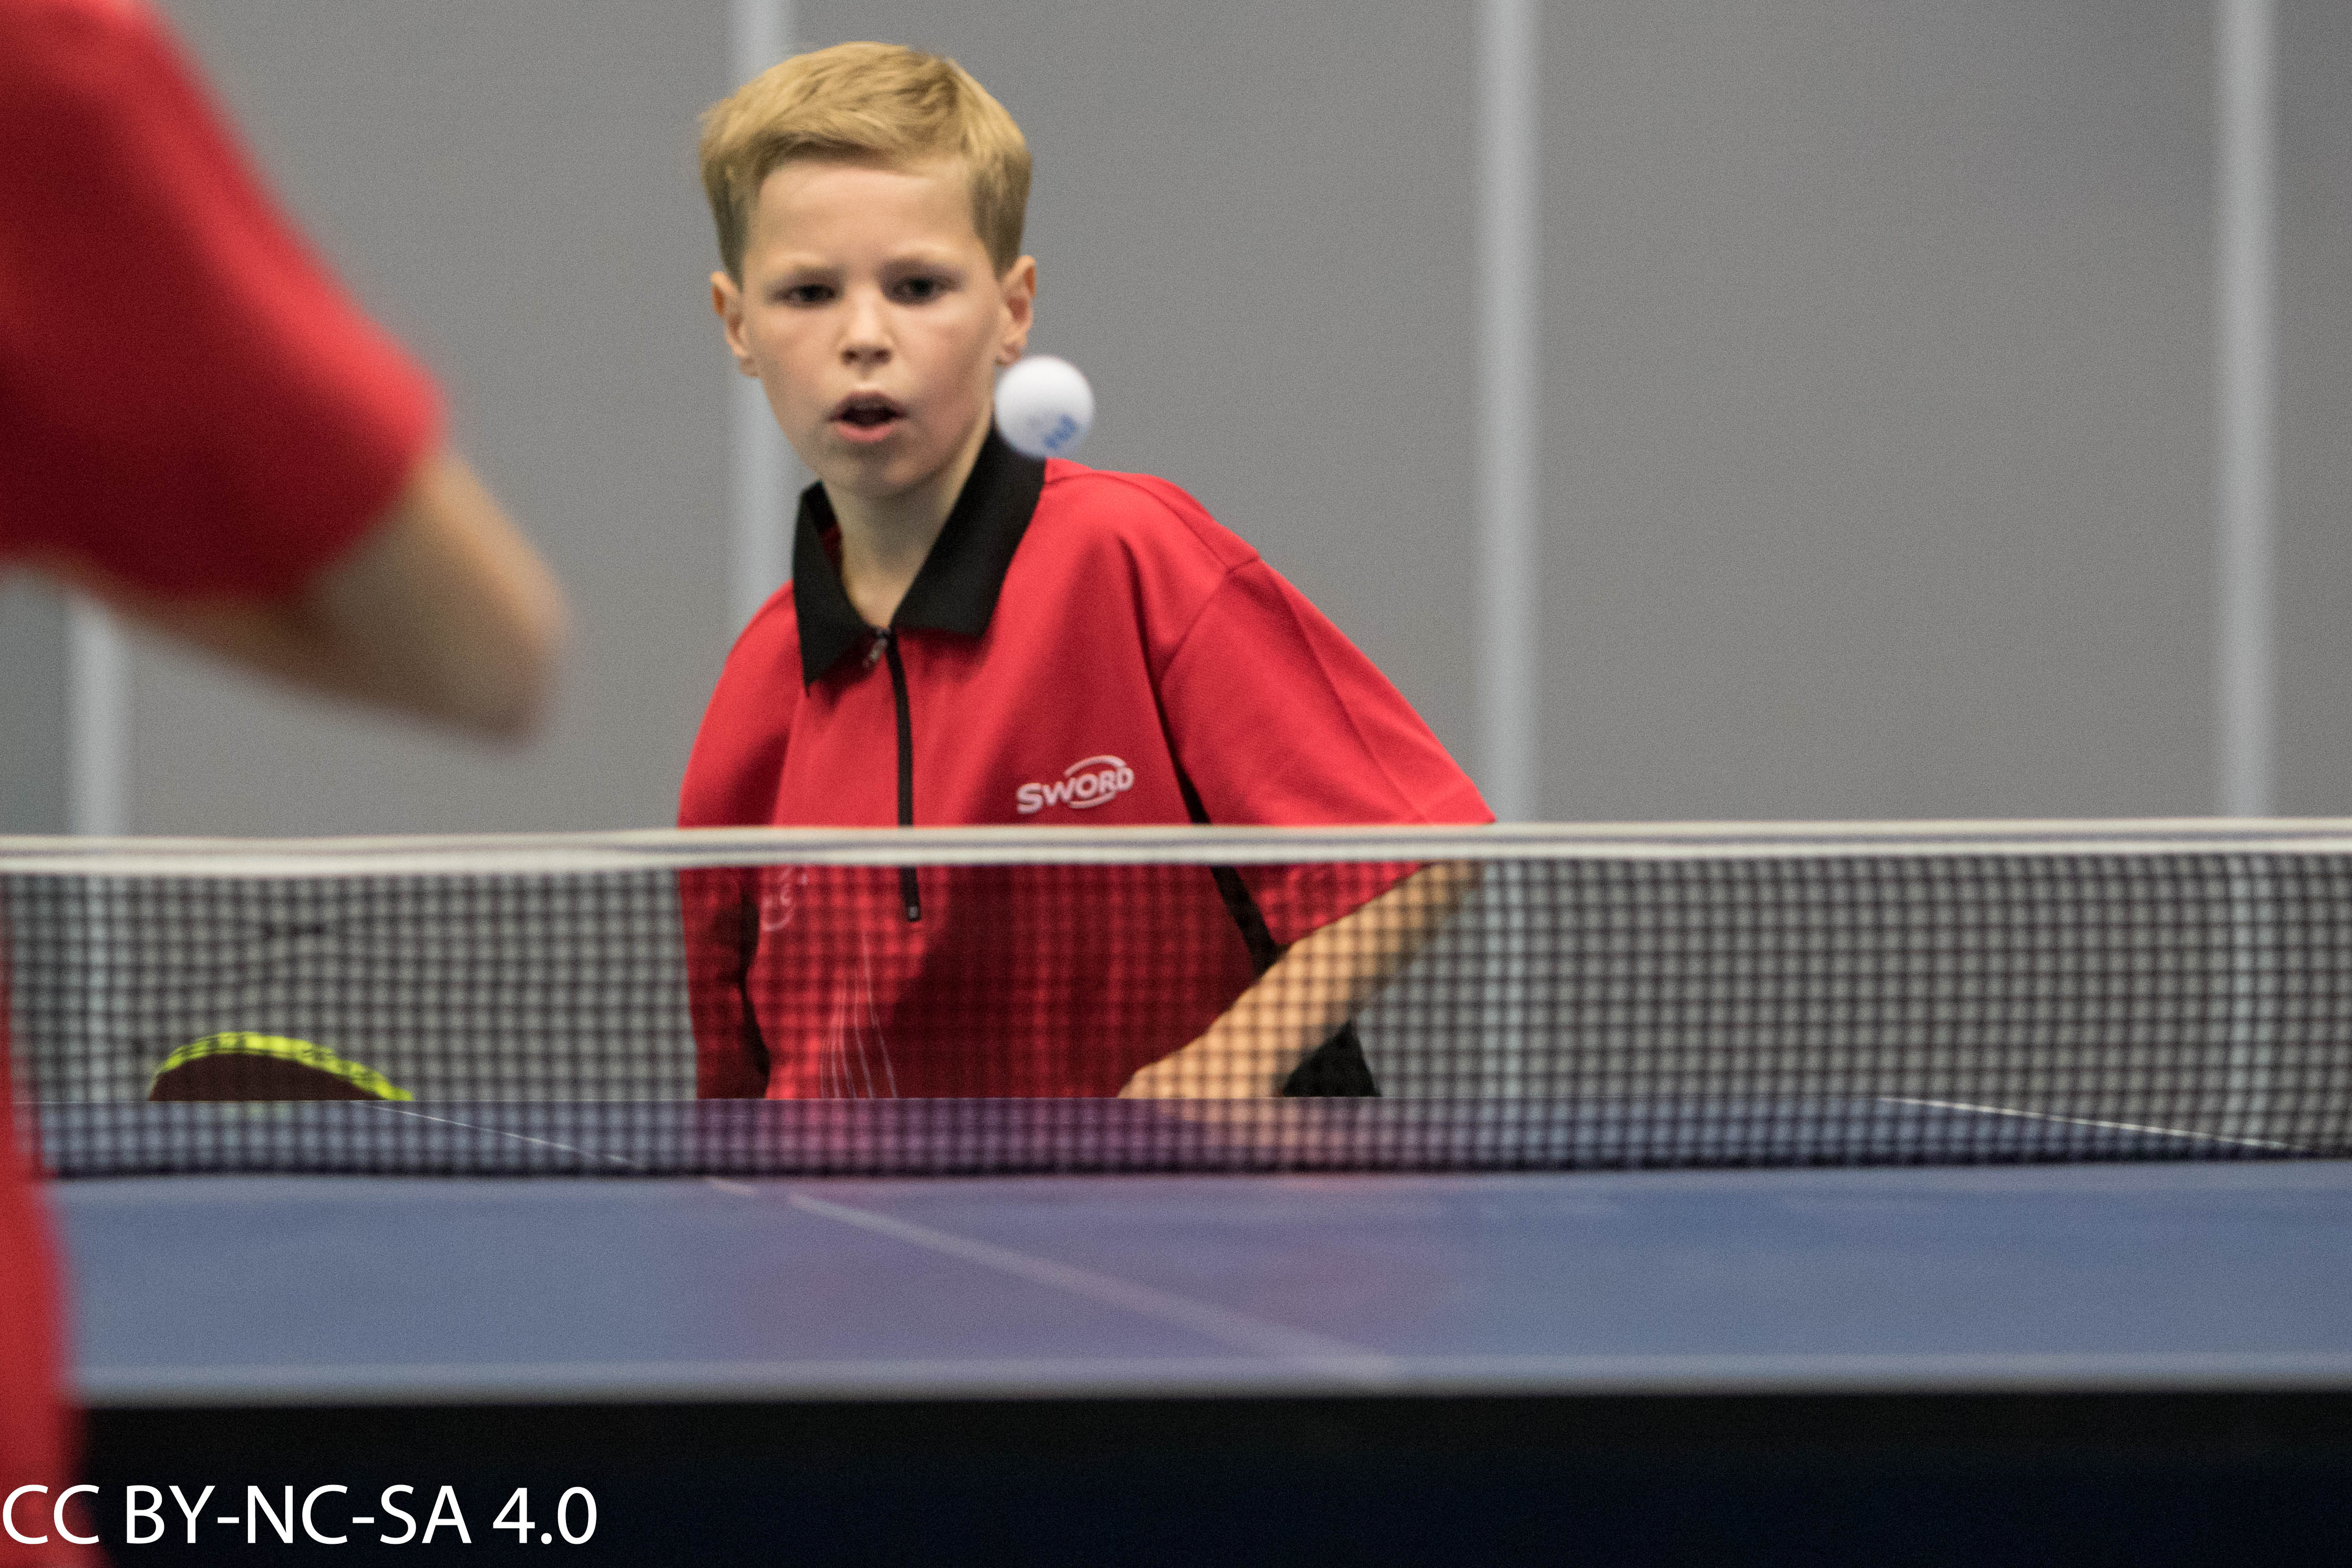 Impressie jeugdcompetitie | Tafeltennisvereniging DHC Delft